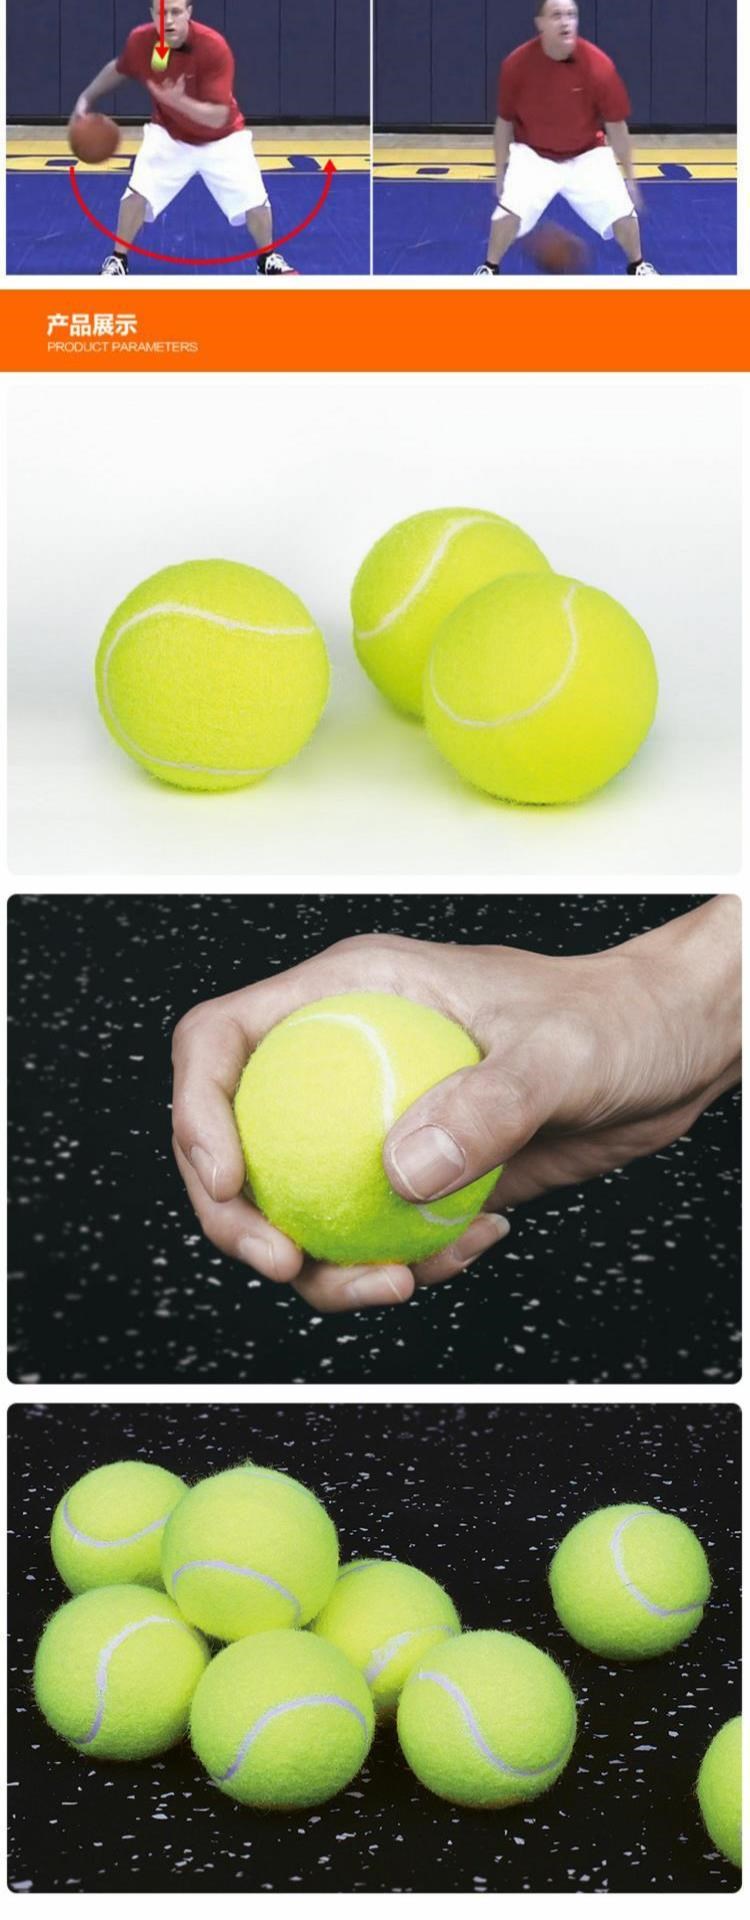 Thiết bị bóng rổ mới tung đồ dùng luyện tập tennis để nâng cao cảm giác bóng, kiểm soát bóng, khả năng phối hợp và phản lực tuyệt vời, thiết bị không có áp lực - Quần vợt